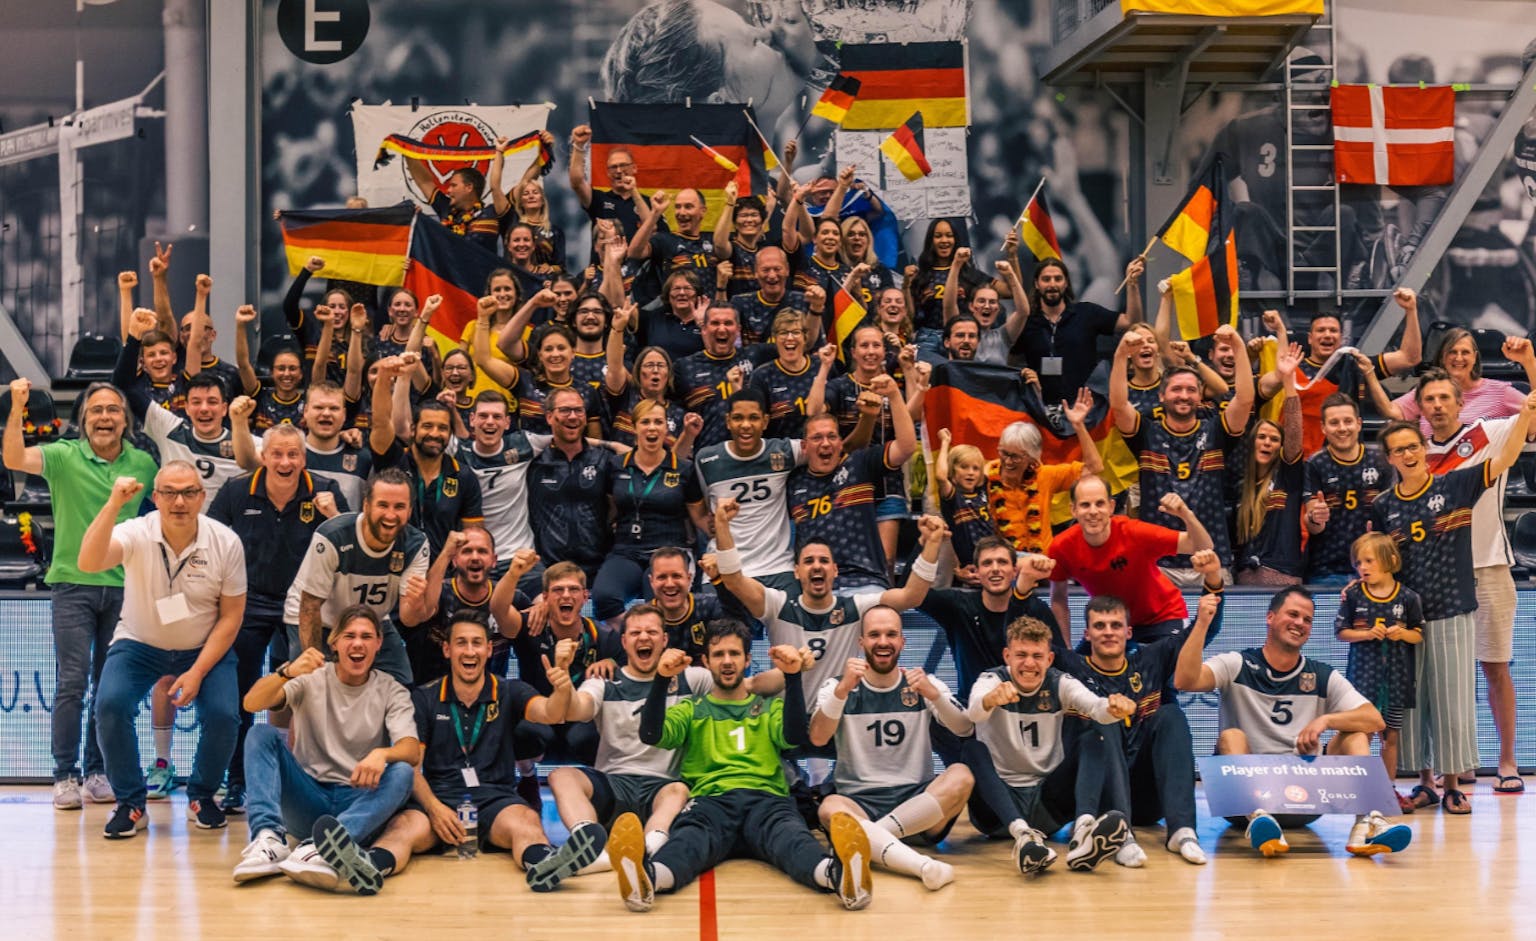 Team Deafboys feiern den 2. Platz Handball WM in Kopenhagen